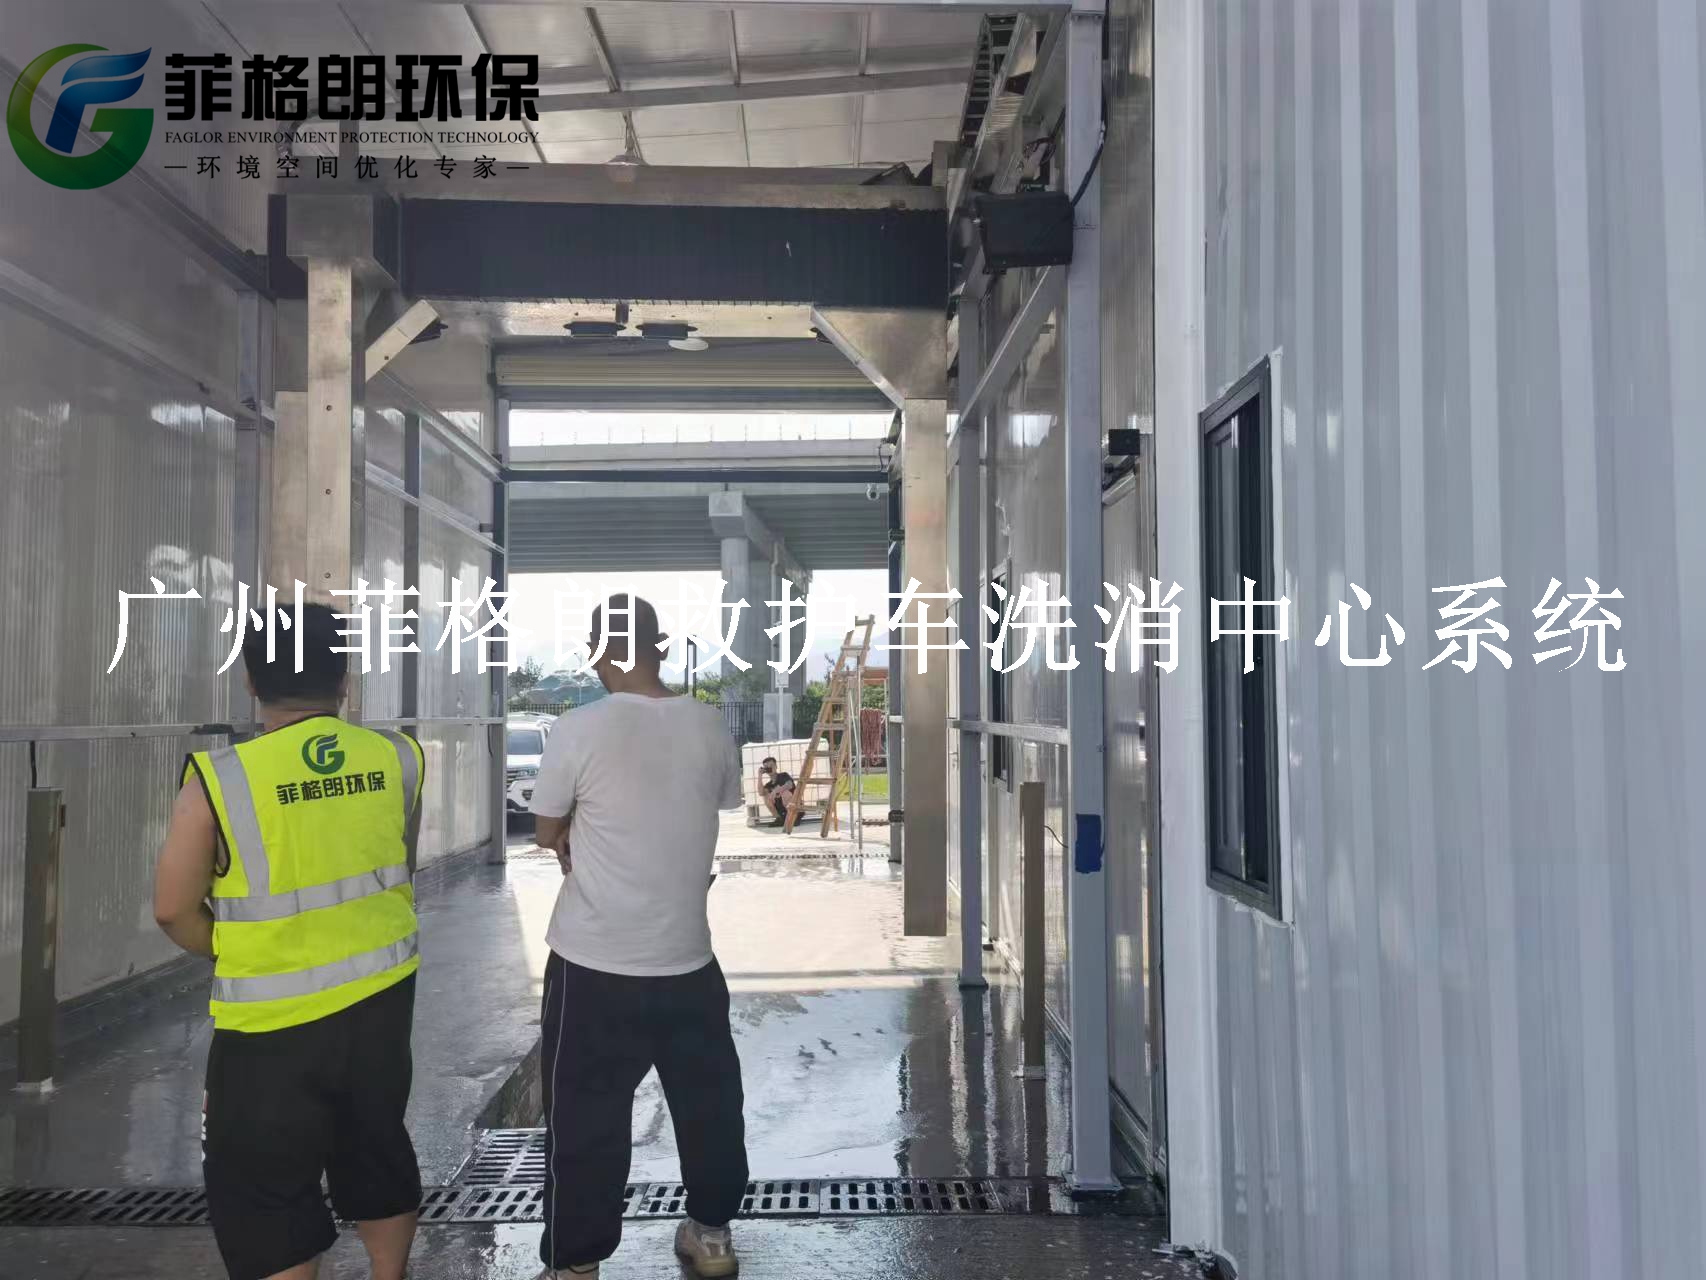 广东省妇幼保健院菲格朗救护车洗消中心系统8月正在施工插图1